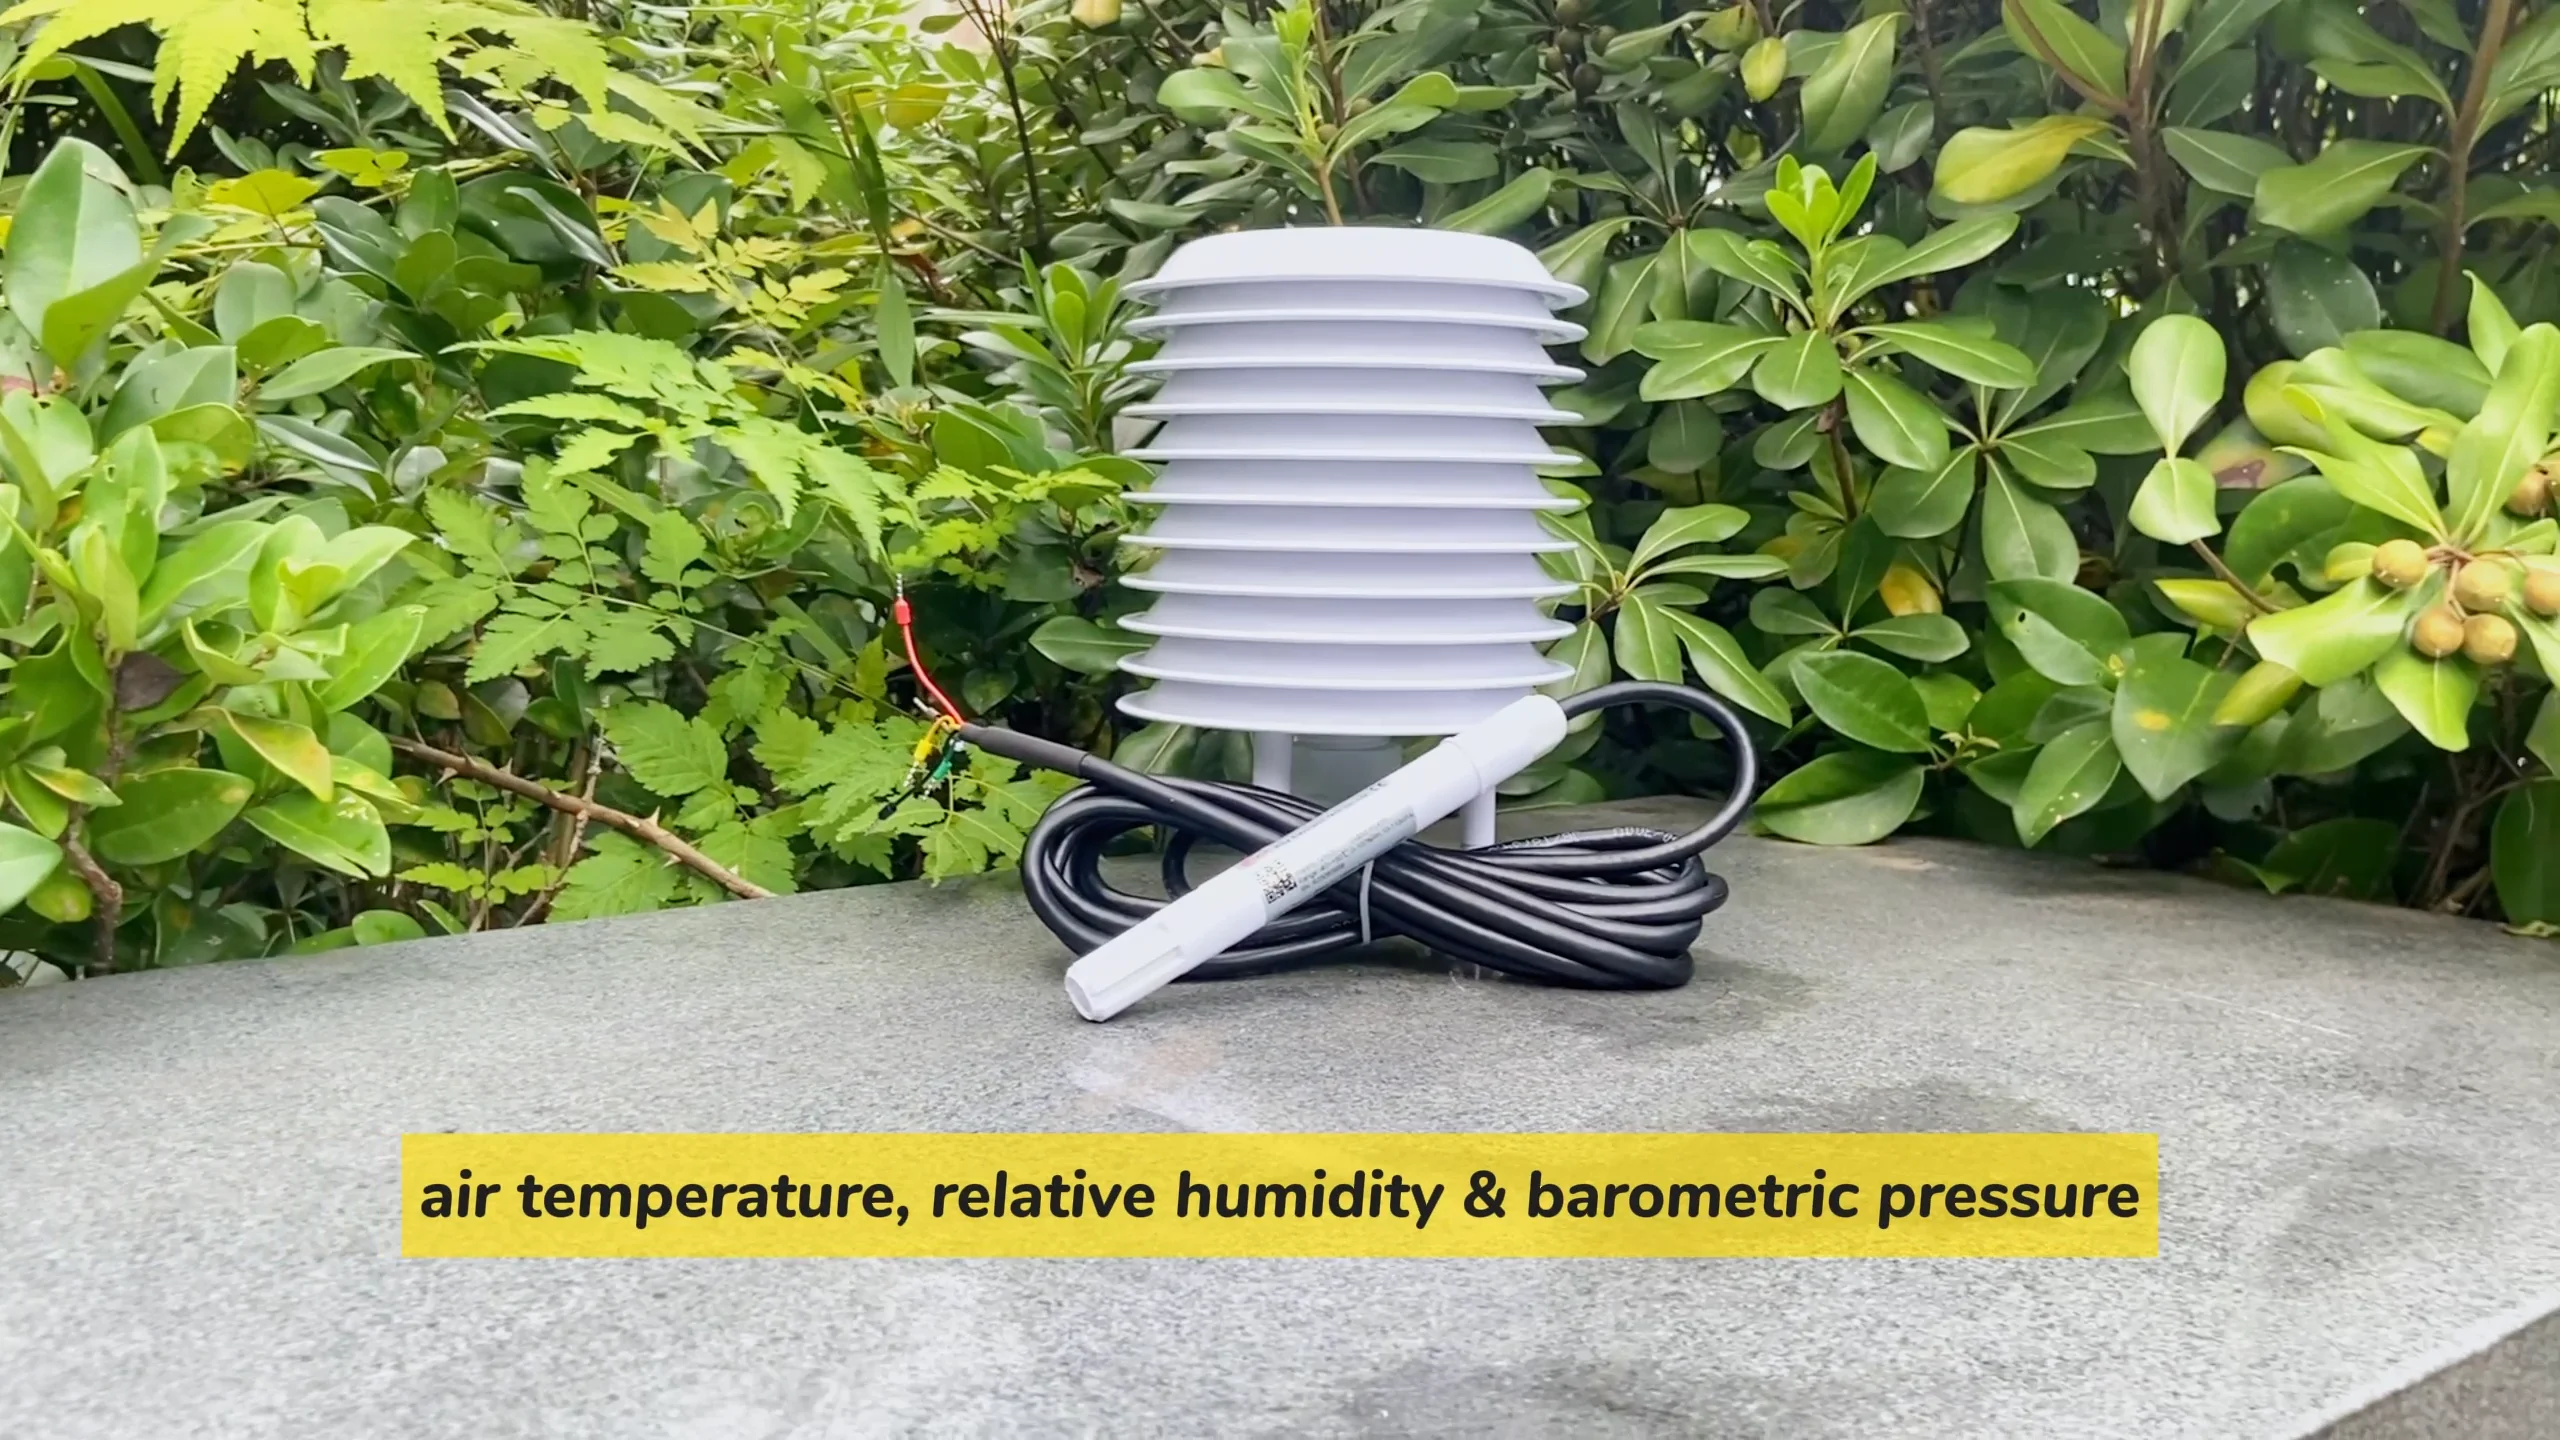 Rk330-01 Atmospheric Temperature, Humidity & Pressure Sensor